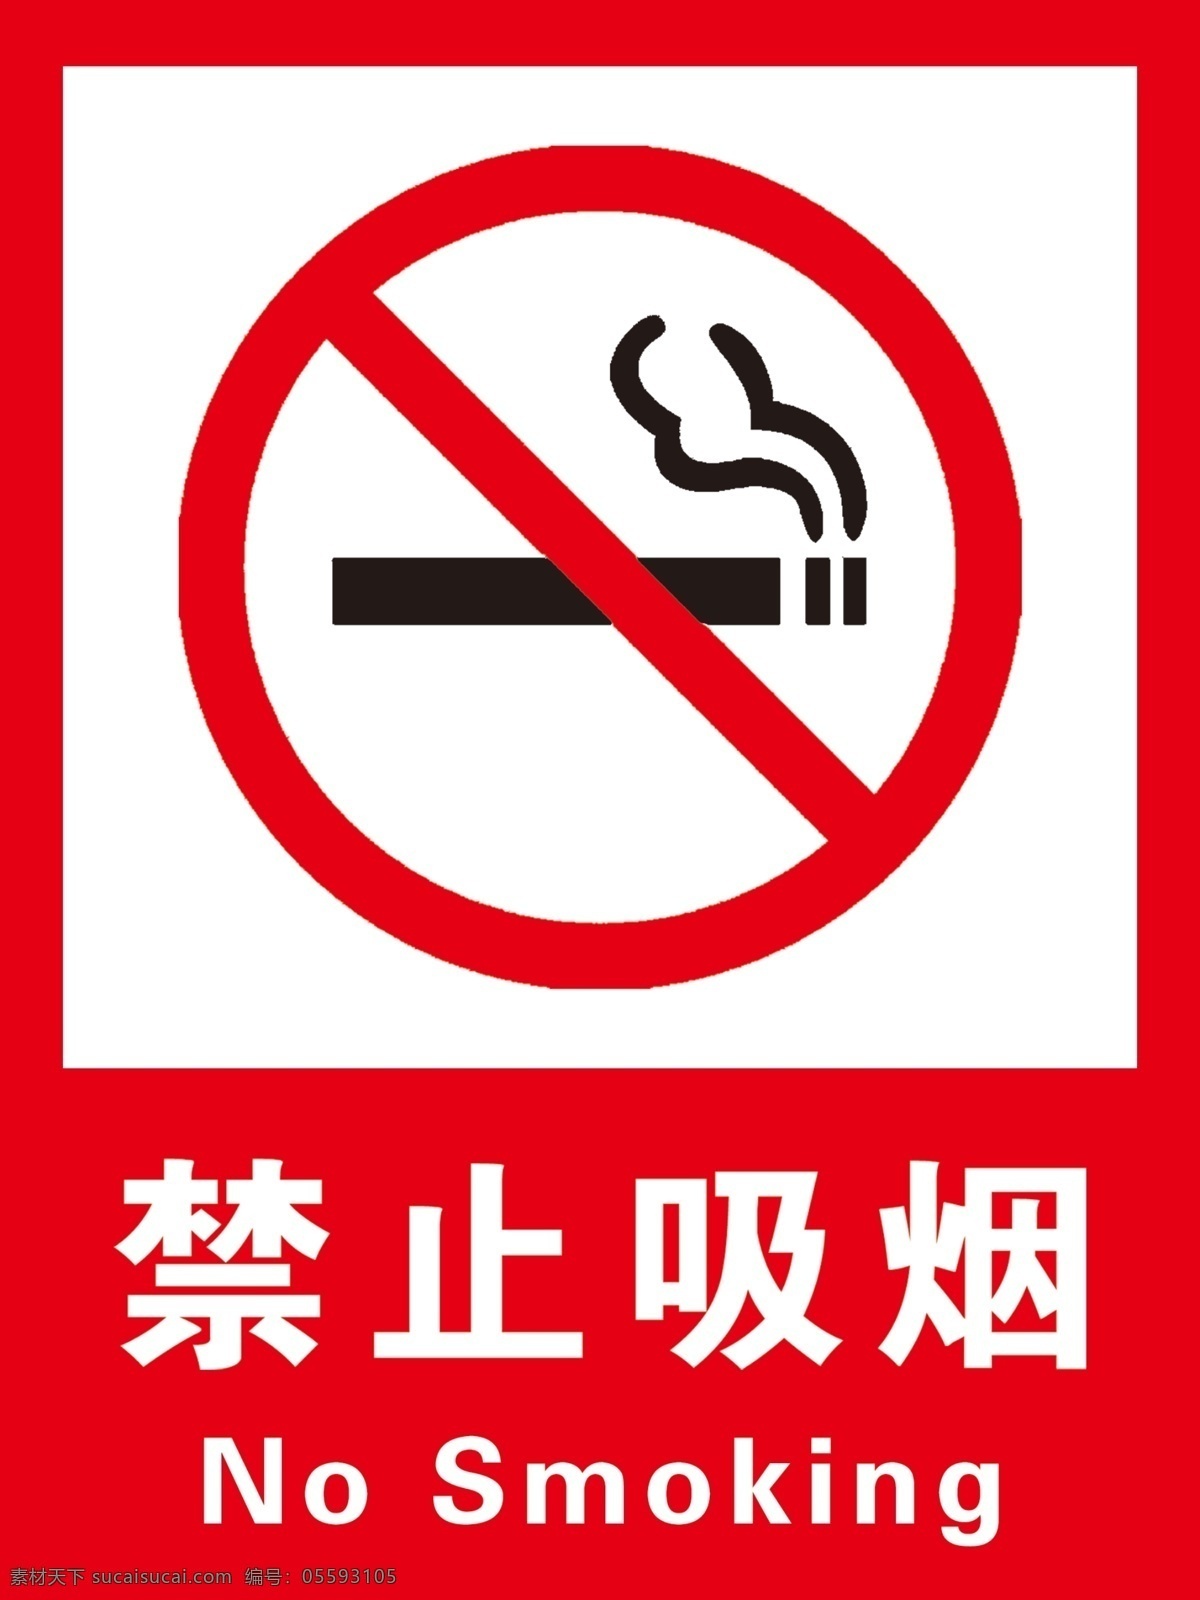 禁止吸烟标识 禁止吸烟标志 禁烟 禁烟标识 禁烟标志 安全标识